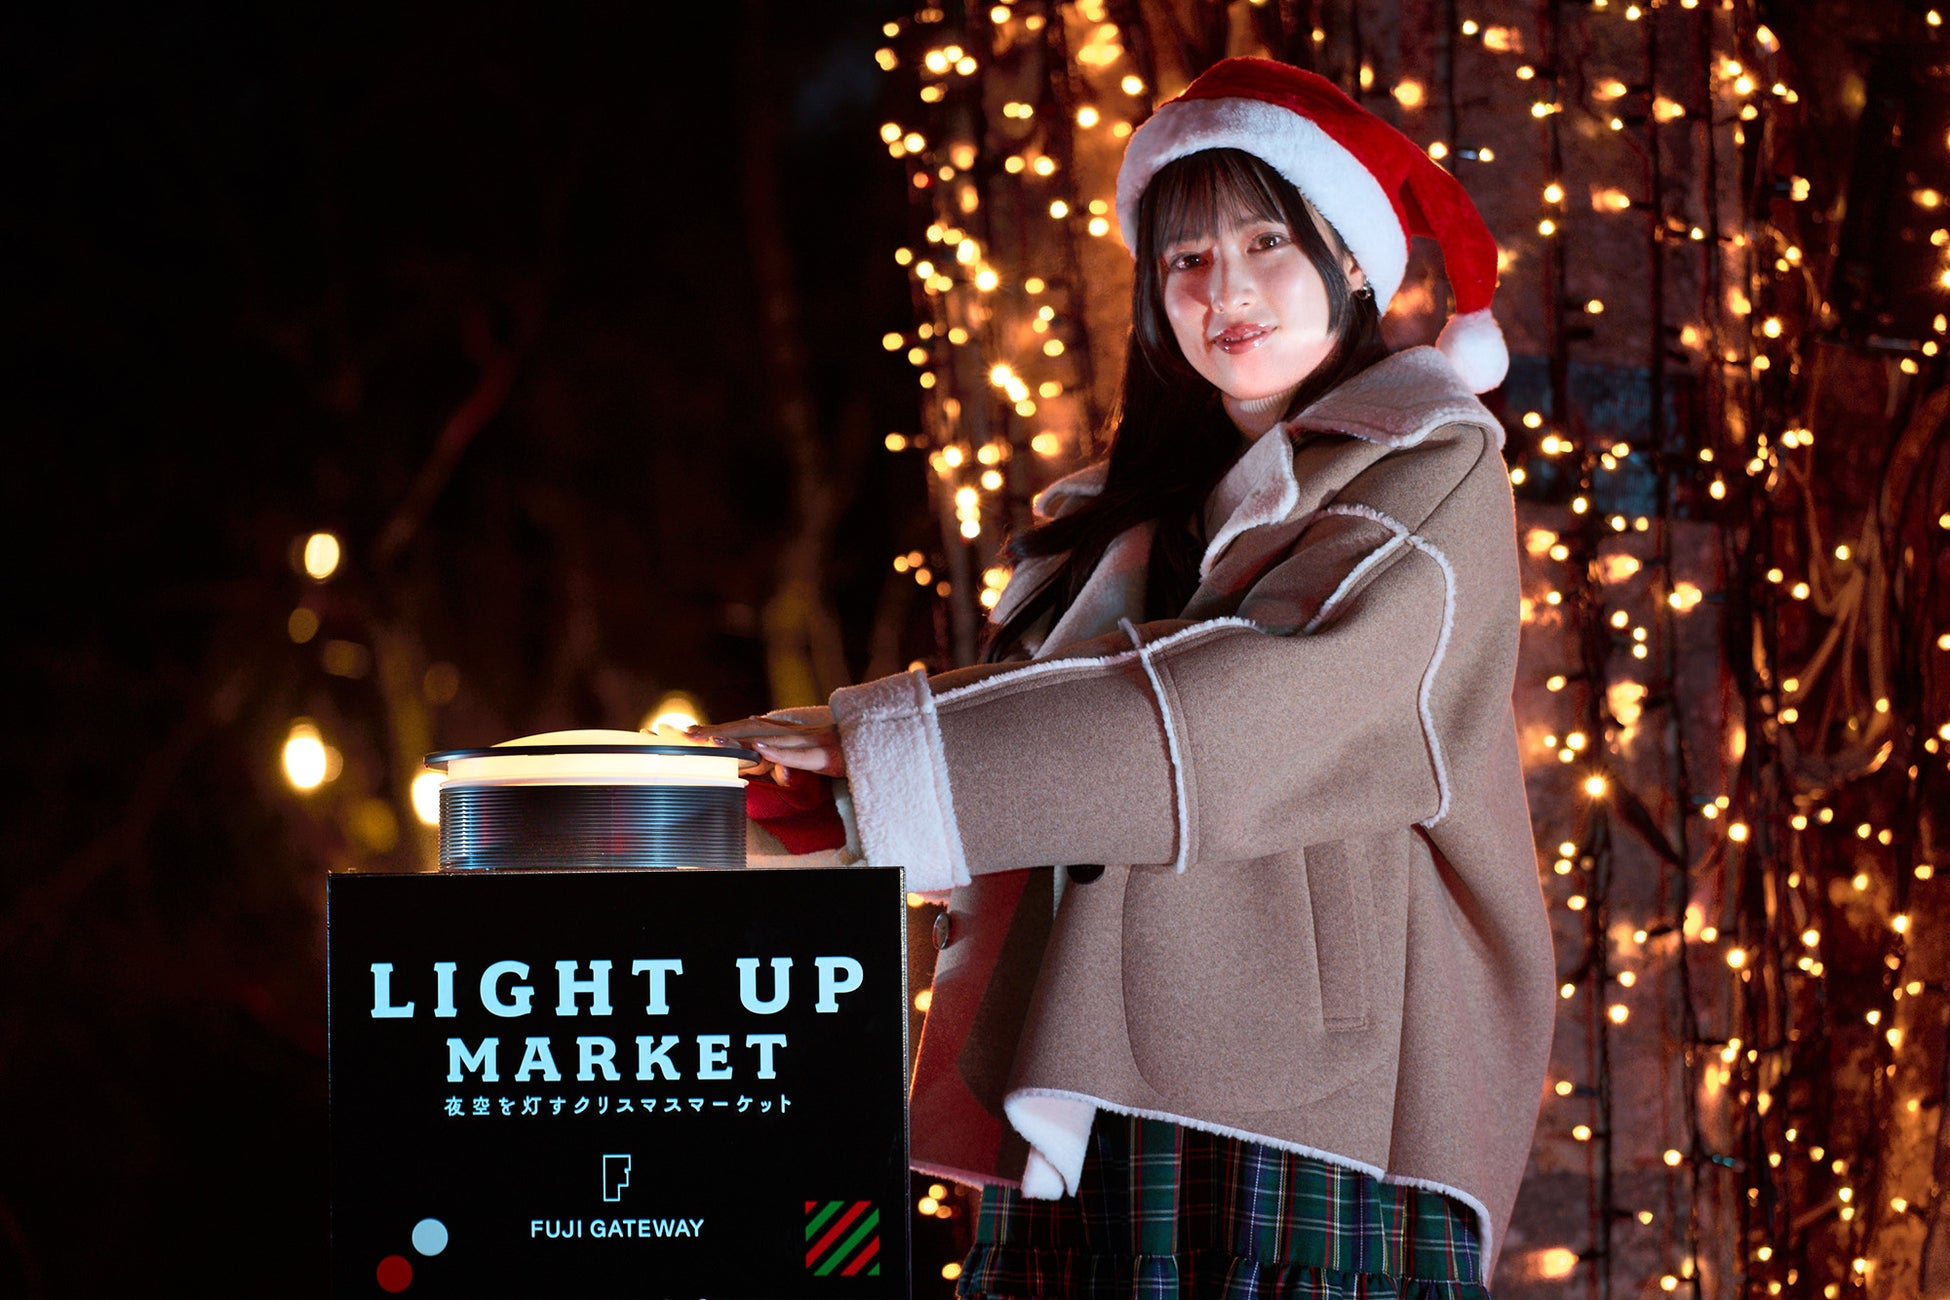 クリスマスマーケット「LIGHT UP MARKET」＠FUJI GATEWAY